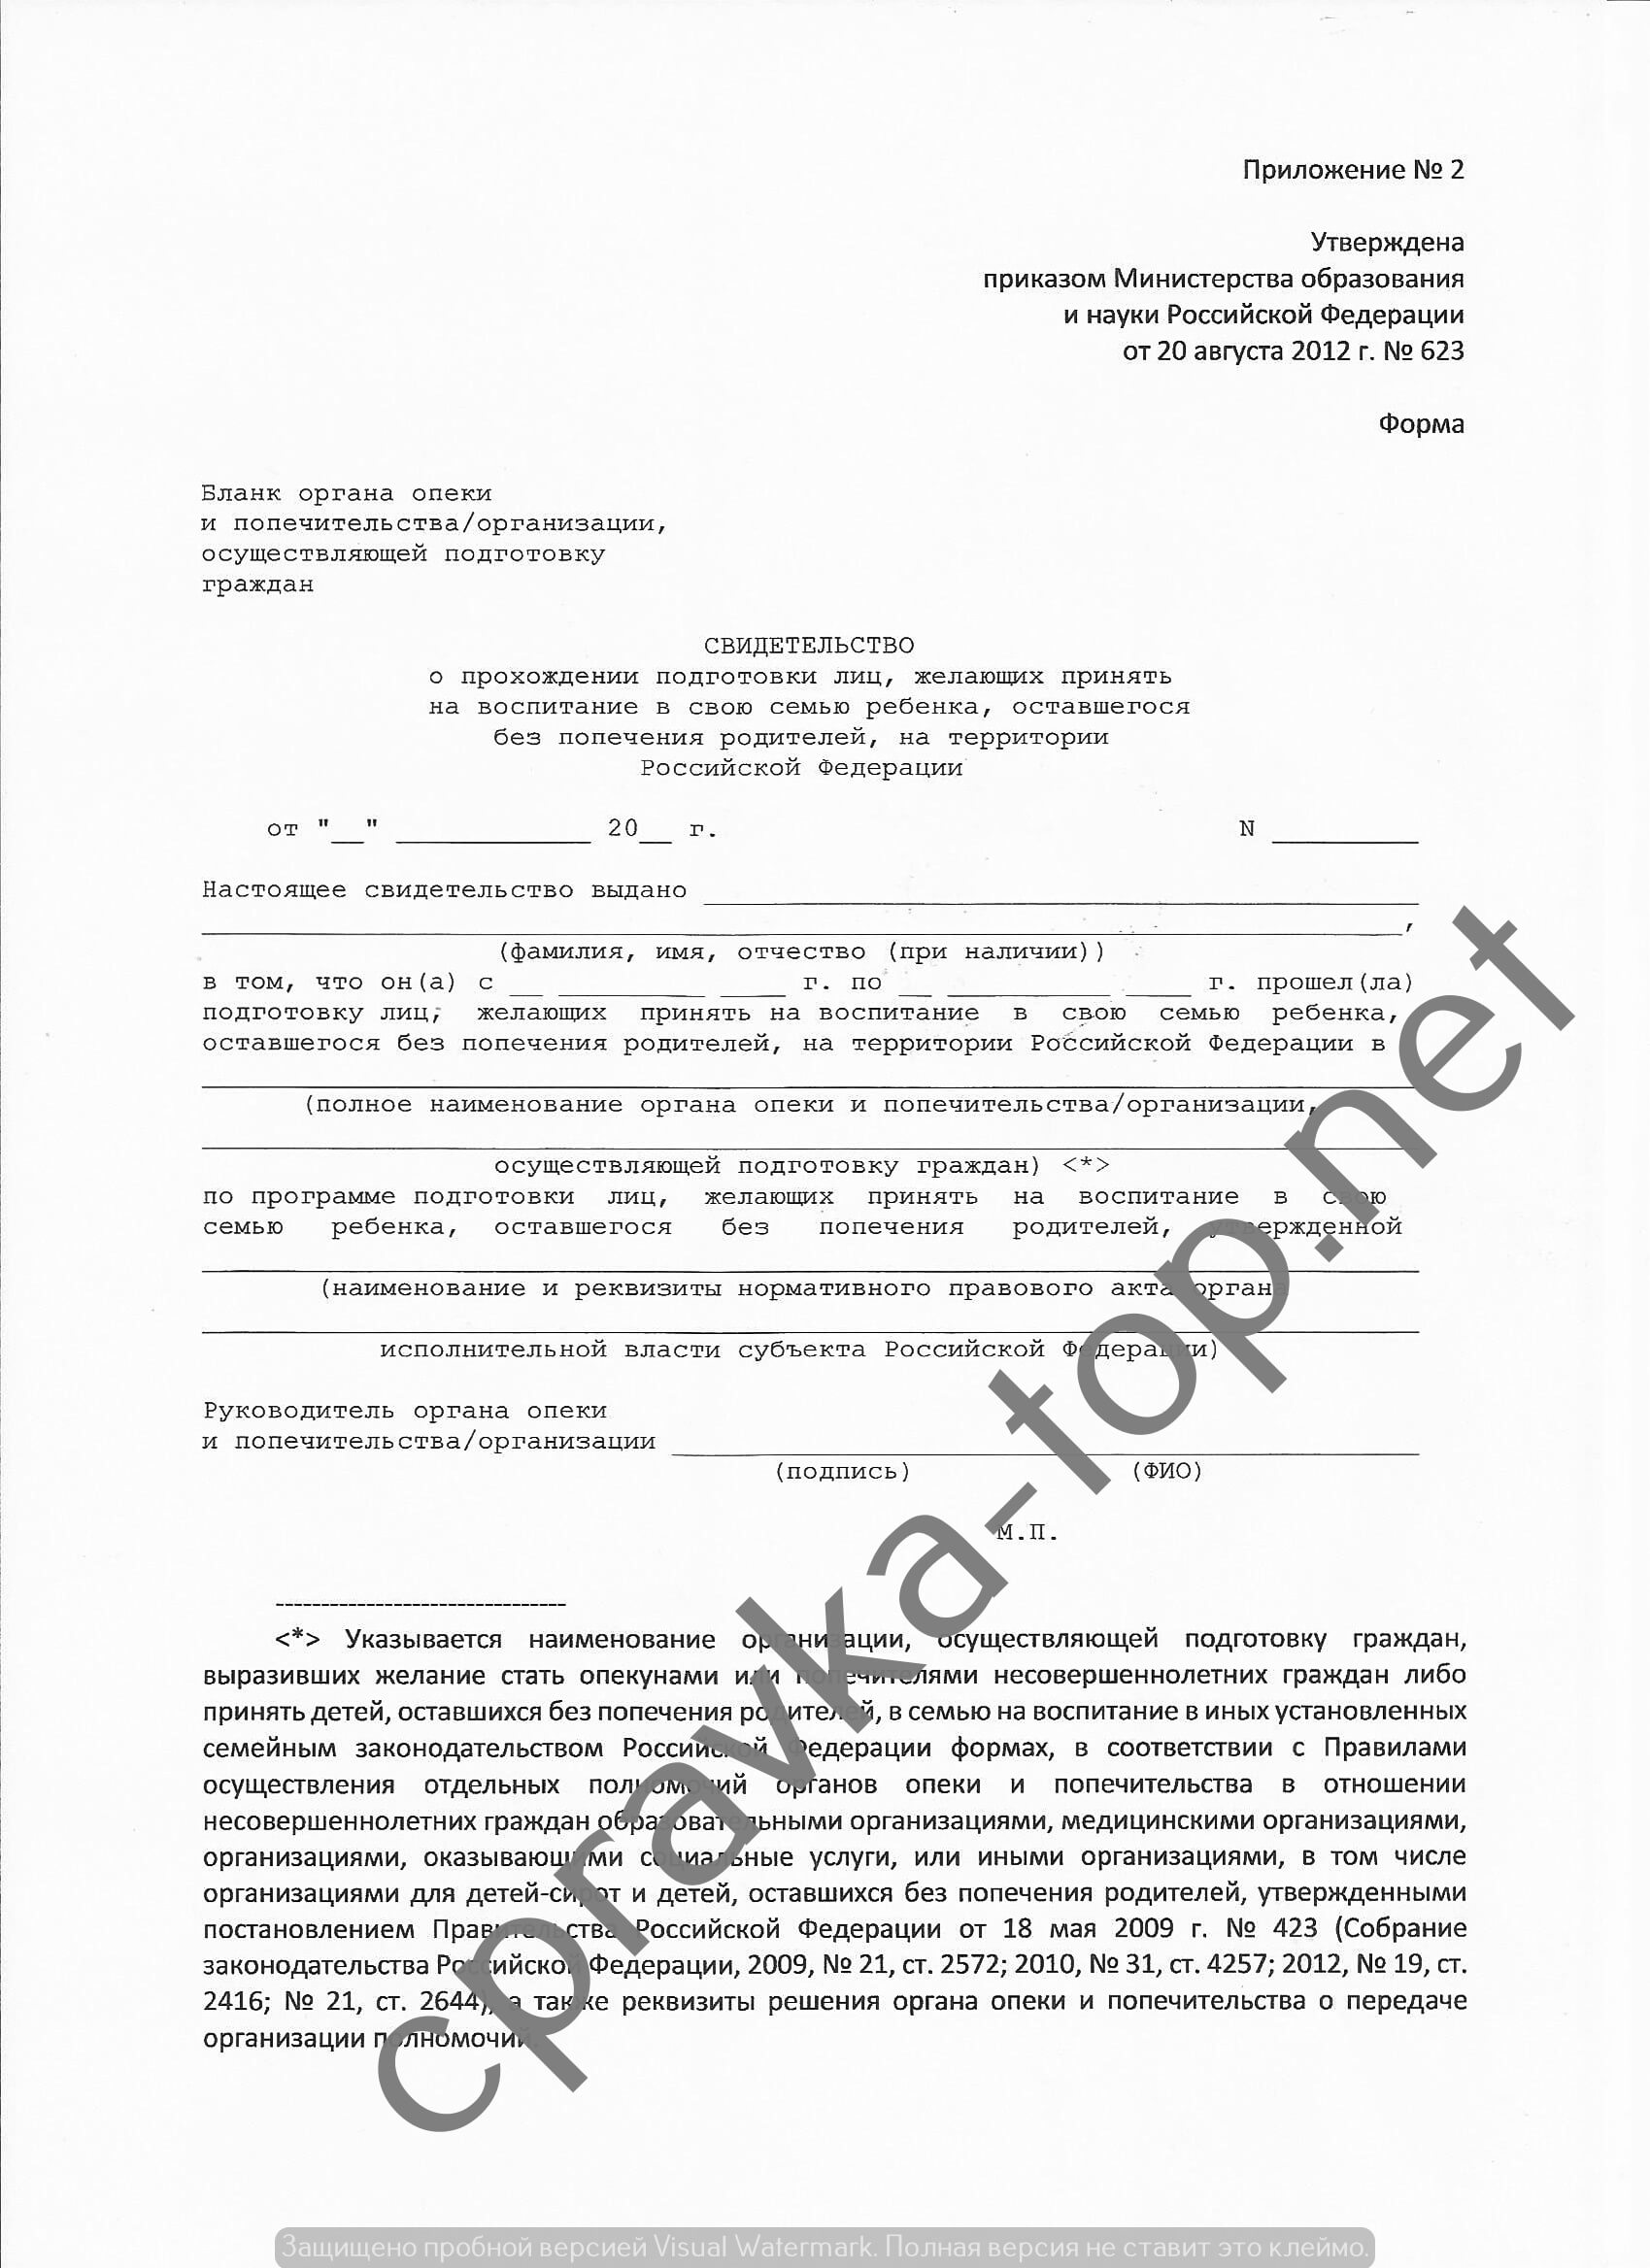 Сертификат школы приемных родителей за 2500р. в Москве